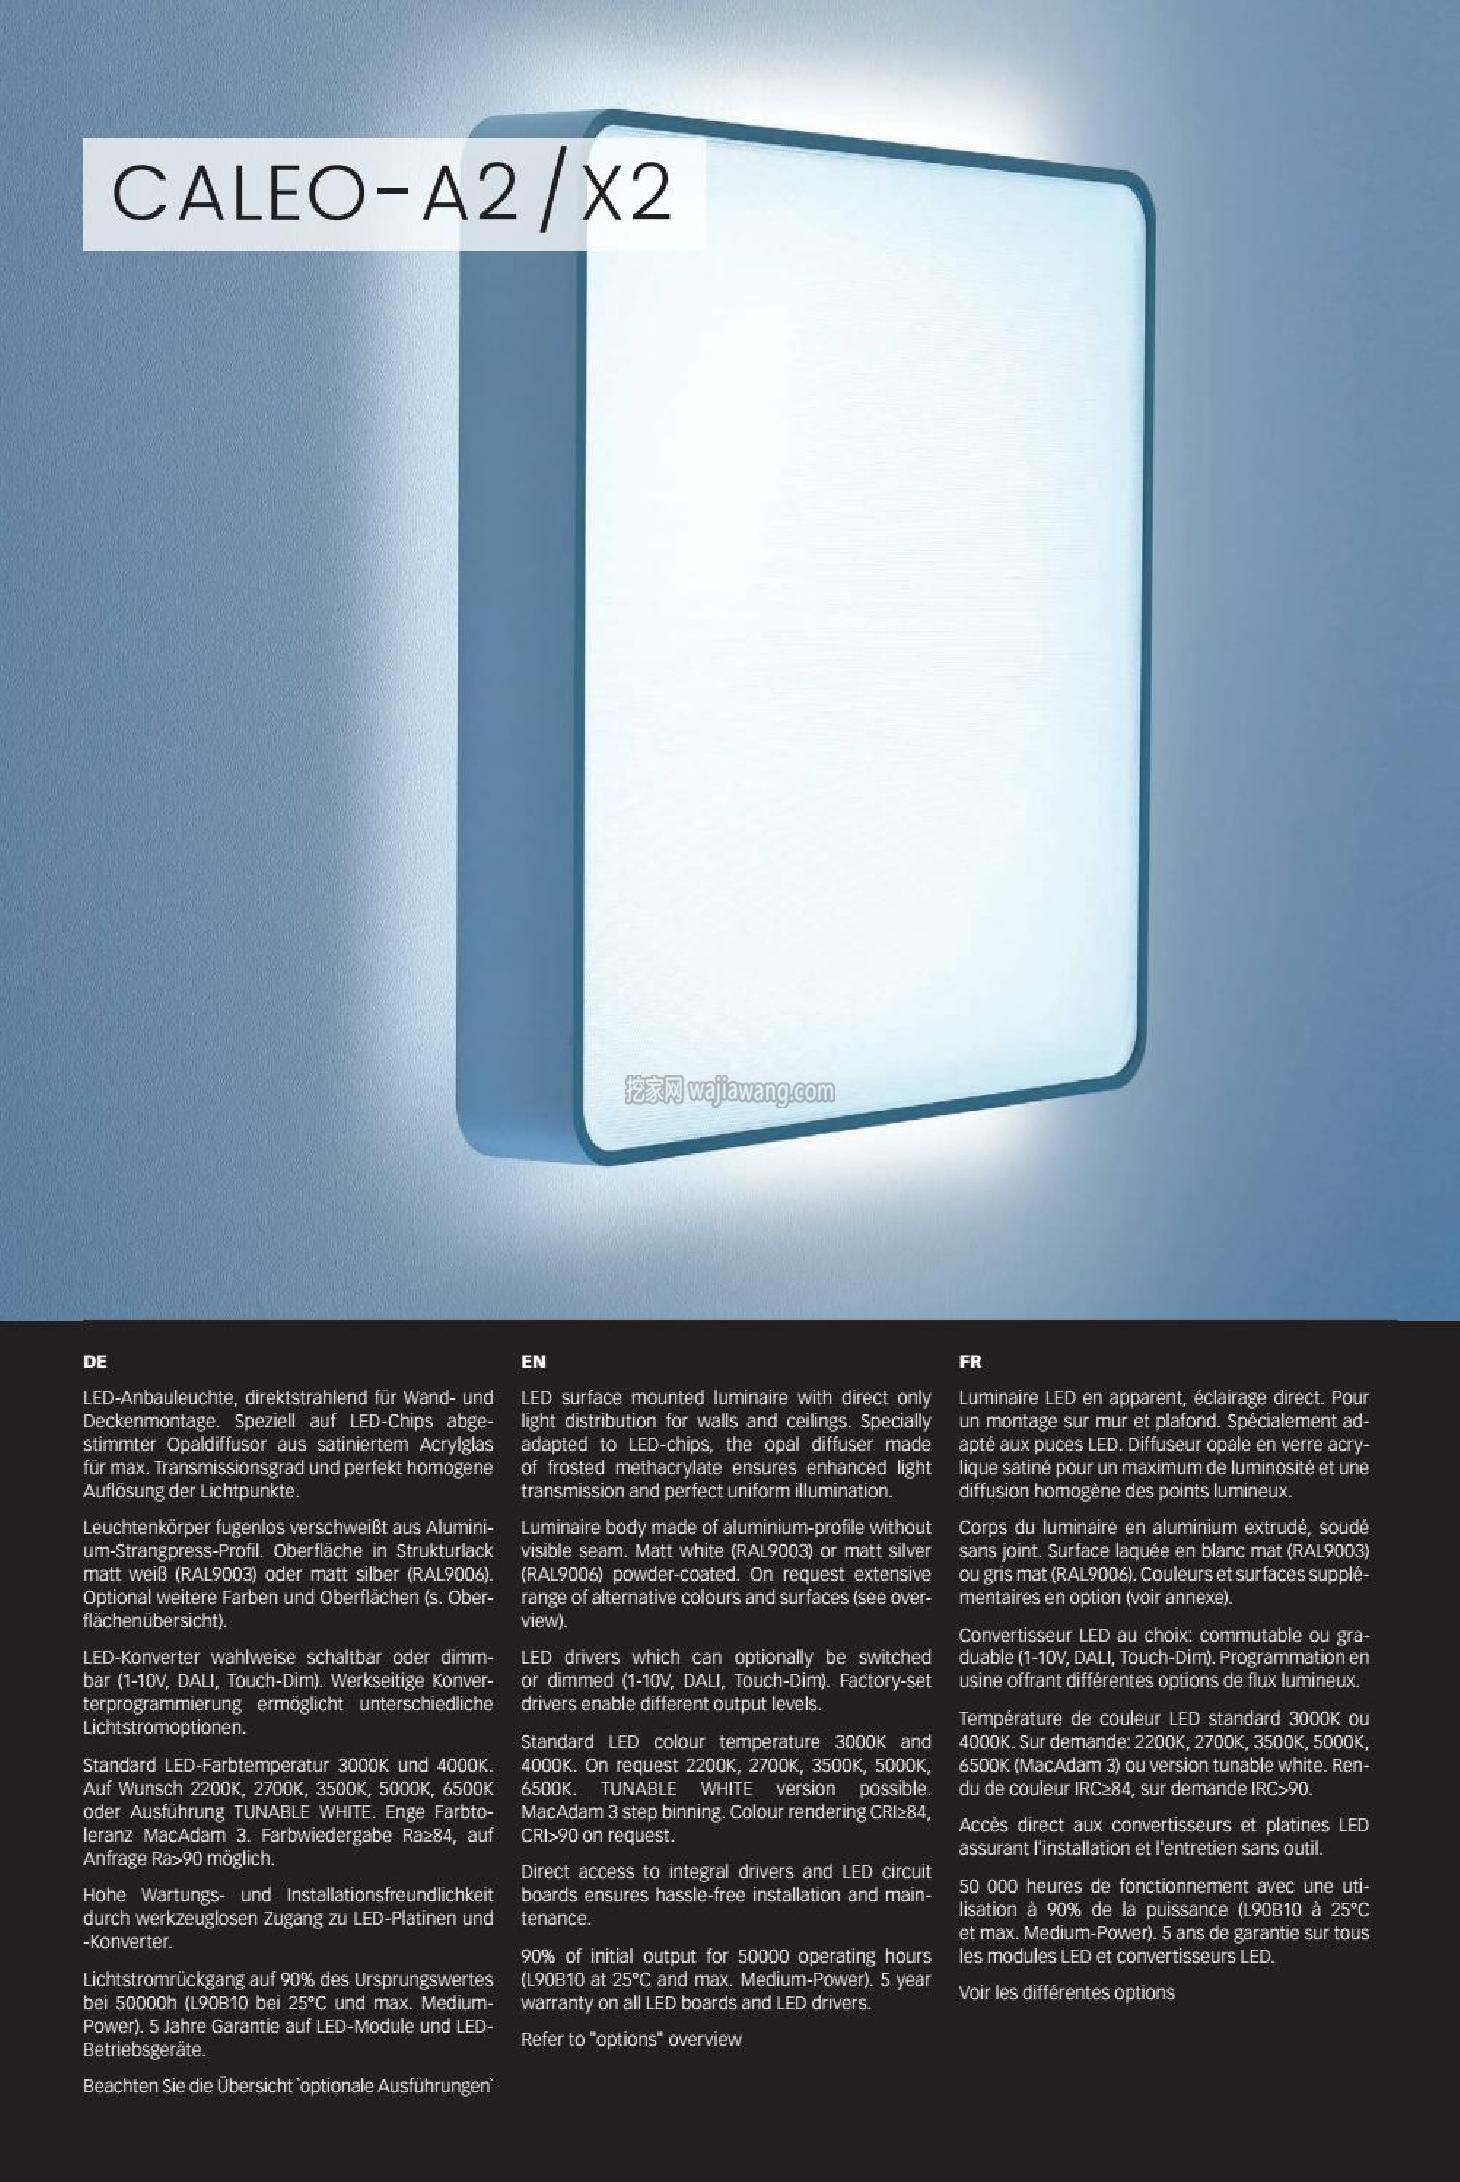 灯饰设计 Lightnet 2016年现代室内LED灯设计(图)